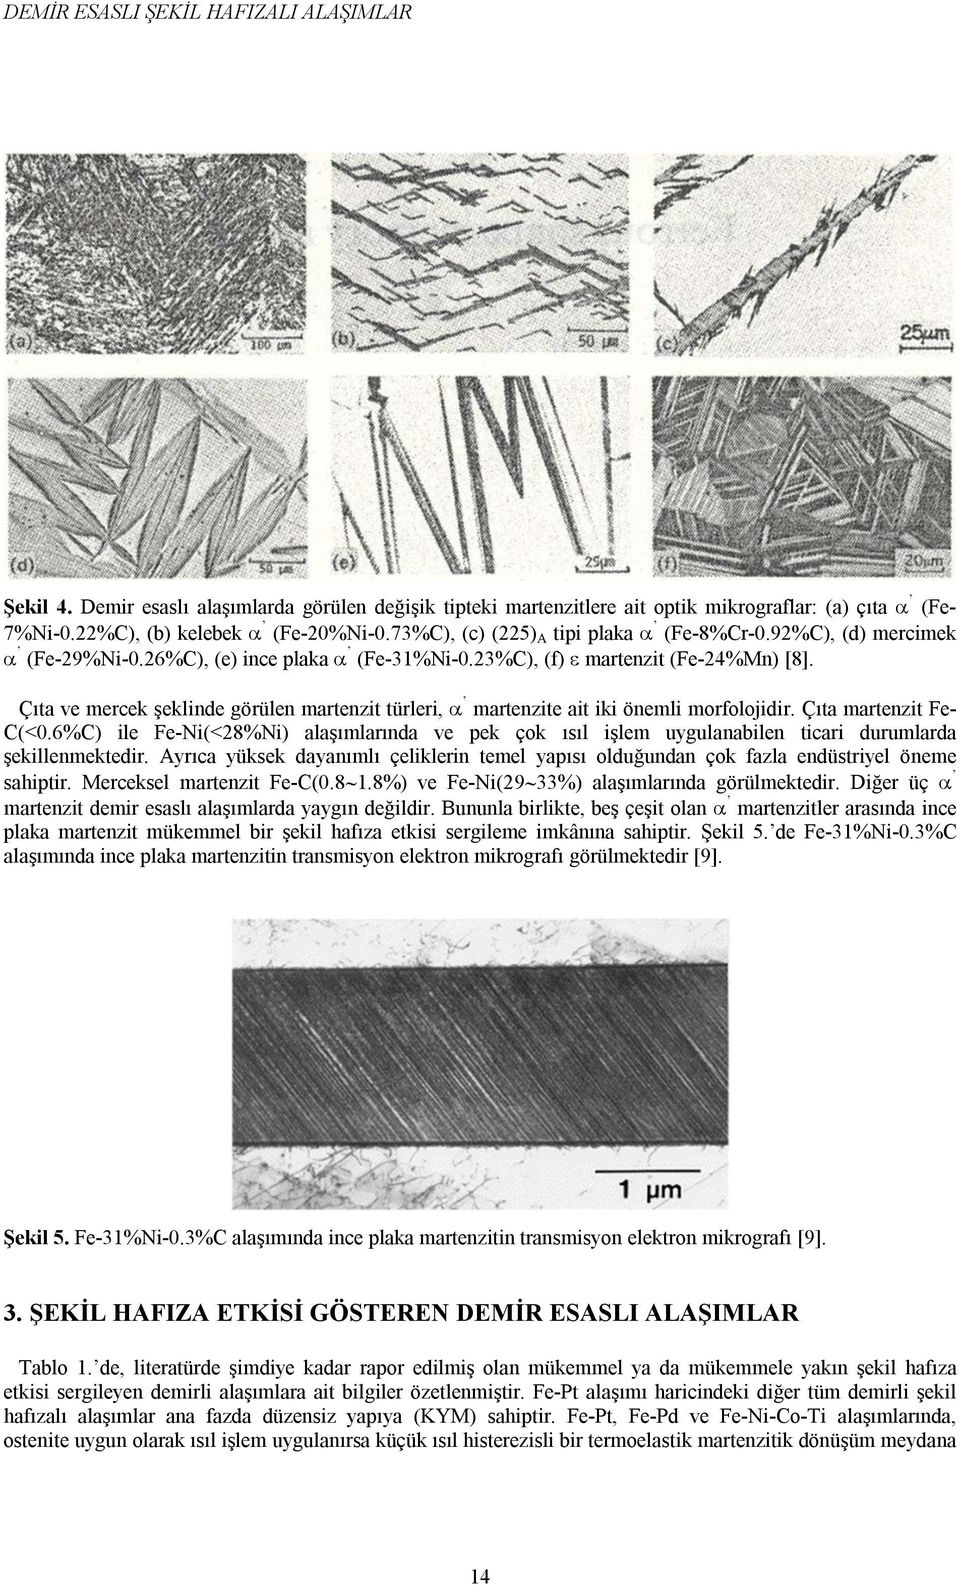 Çıta ve mercek şeklinde görülen martenzit türleri, martenzite ait iki önemli morfolojidir. Çıta martenzit Fe- C(<0.